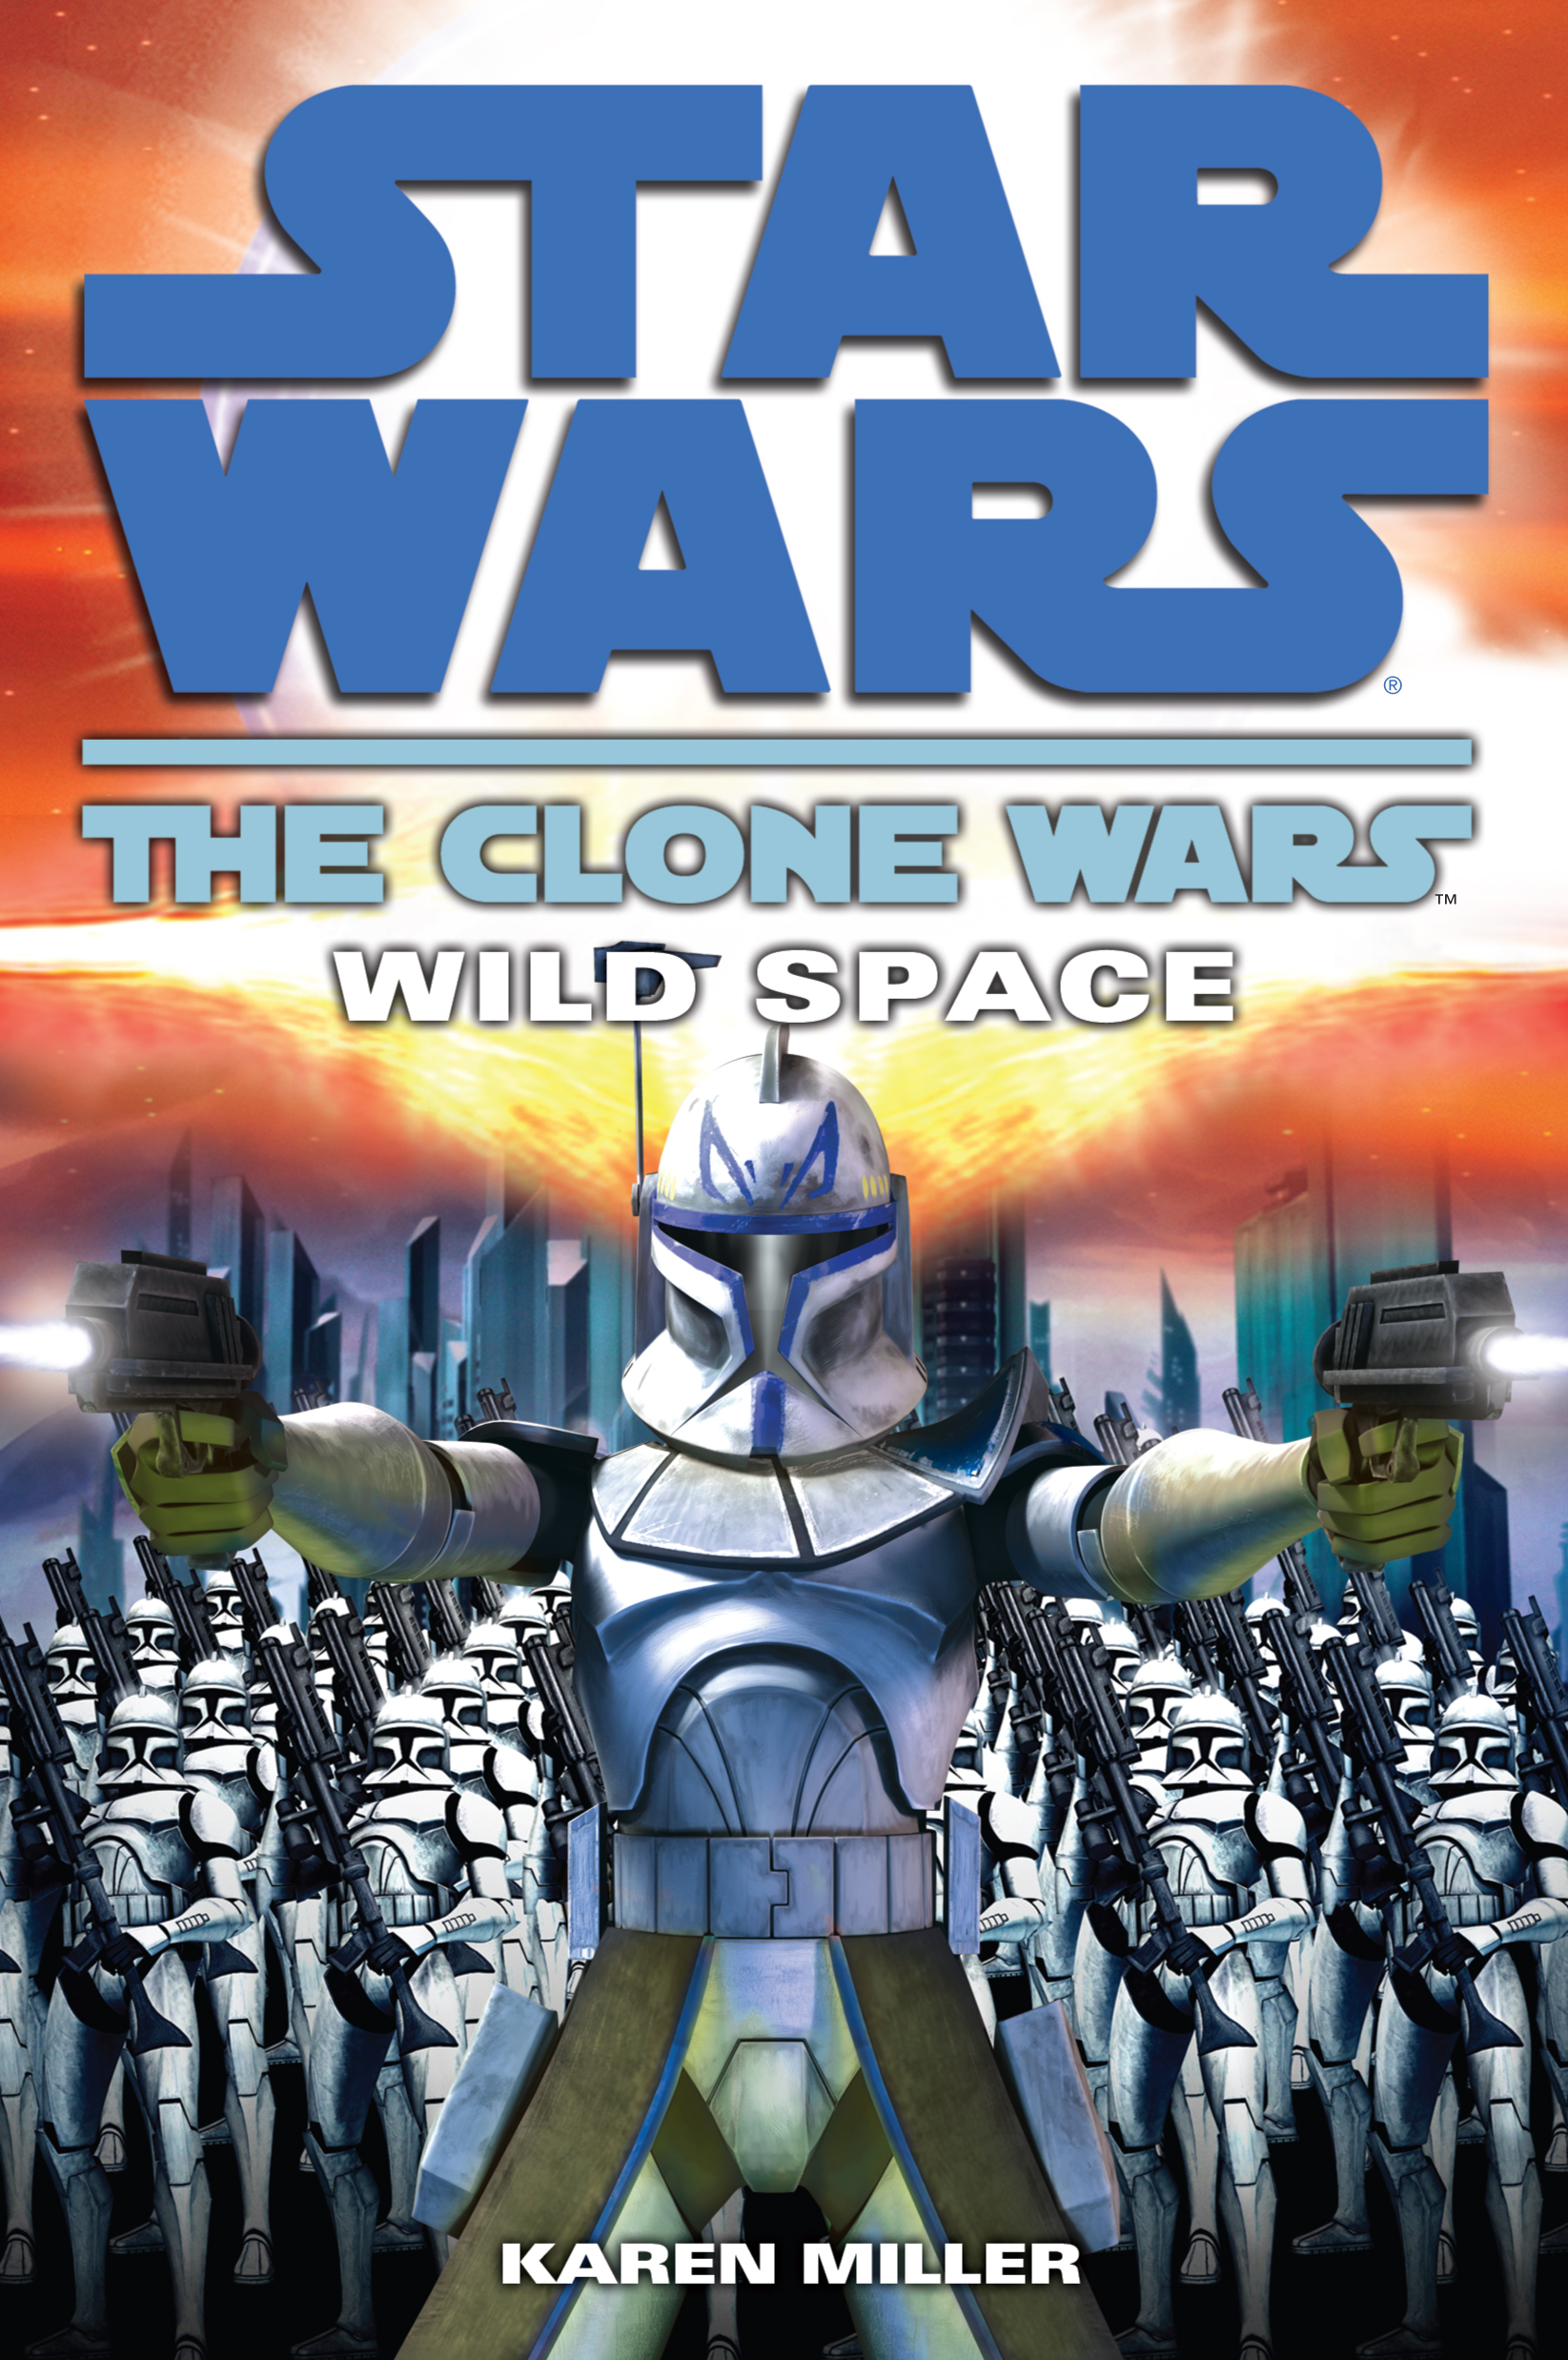 The Clone Wars Wild Space Wookieepedia FANDOM powered by Wikia